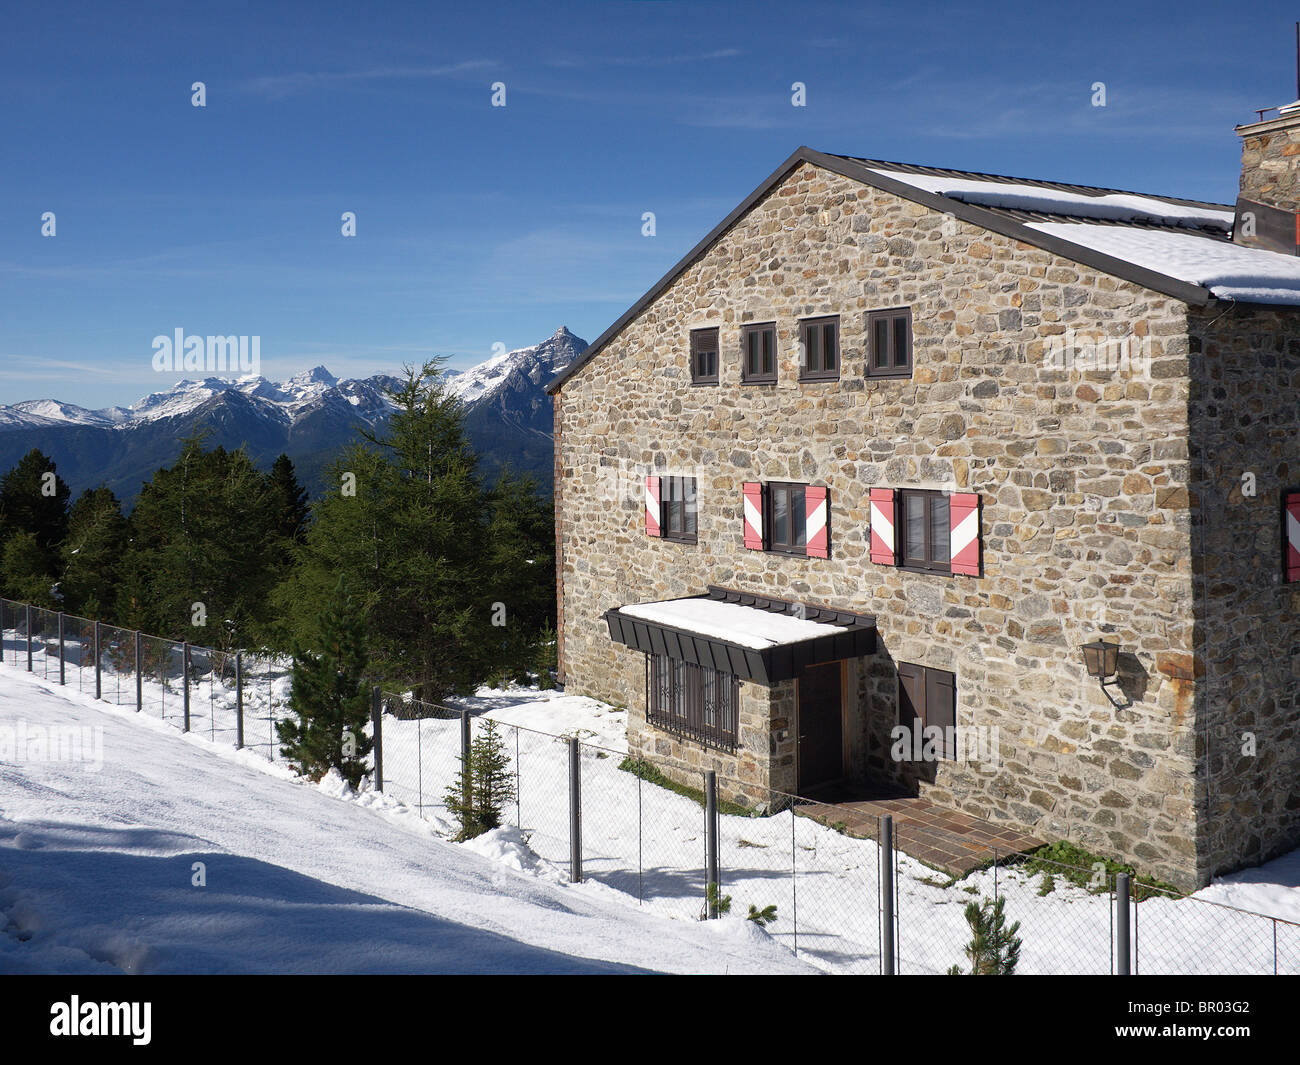 Klimahaus hut in early season snowfall  September on the Patscherkofel mountain near Innsbruck Stock Photo